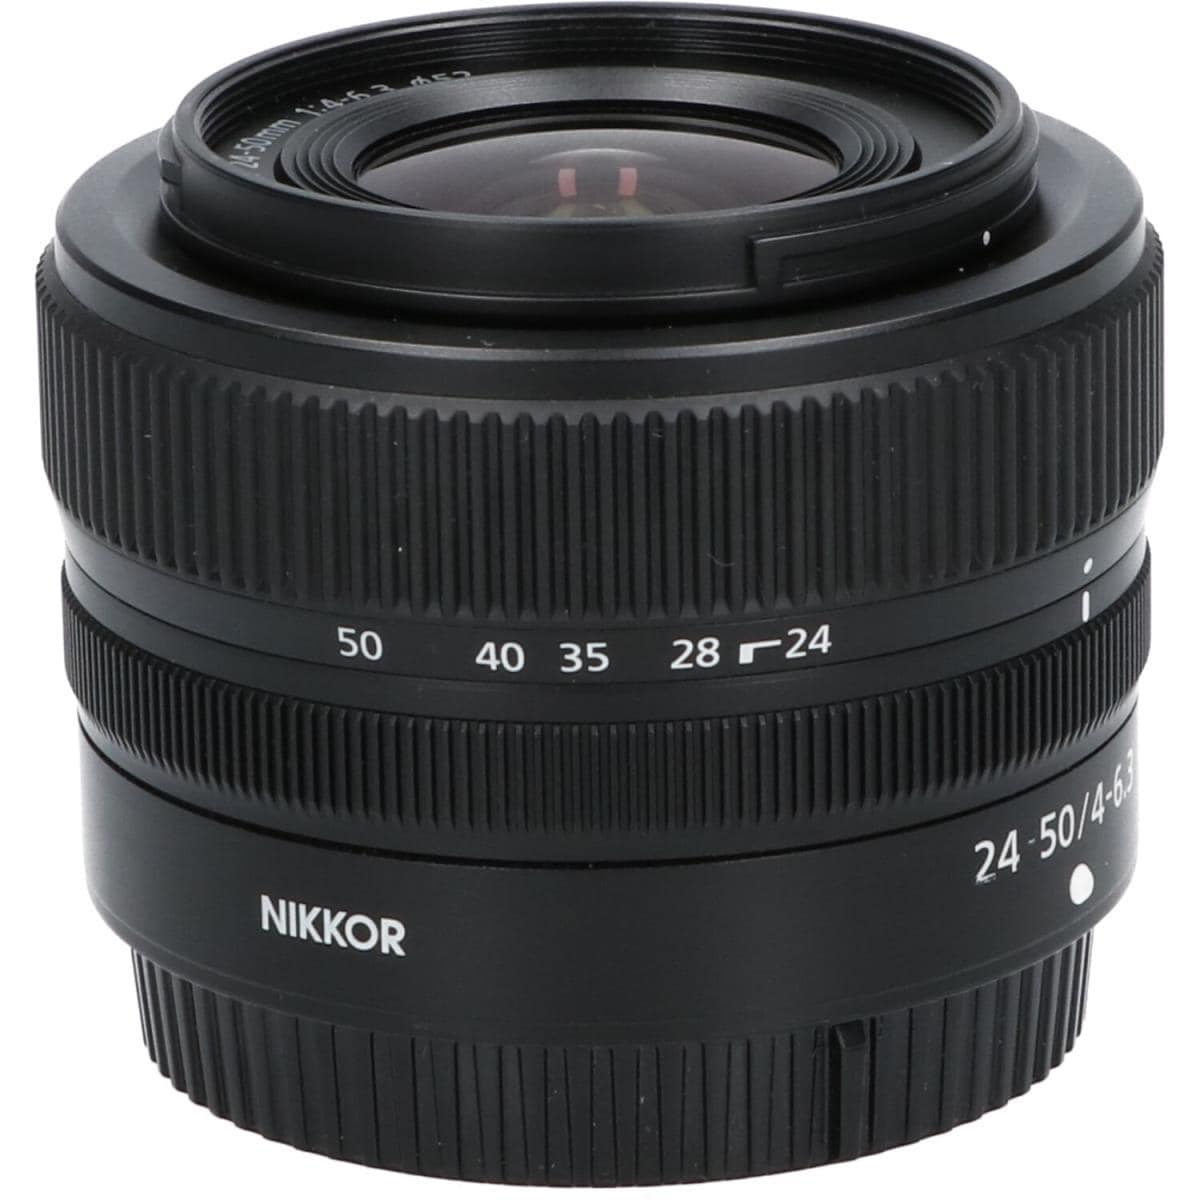 ニコンNikon NIKKOR Z 24-50mm f/4-6.3 開封未使用510mm - レンズ(ズーム)